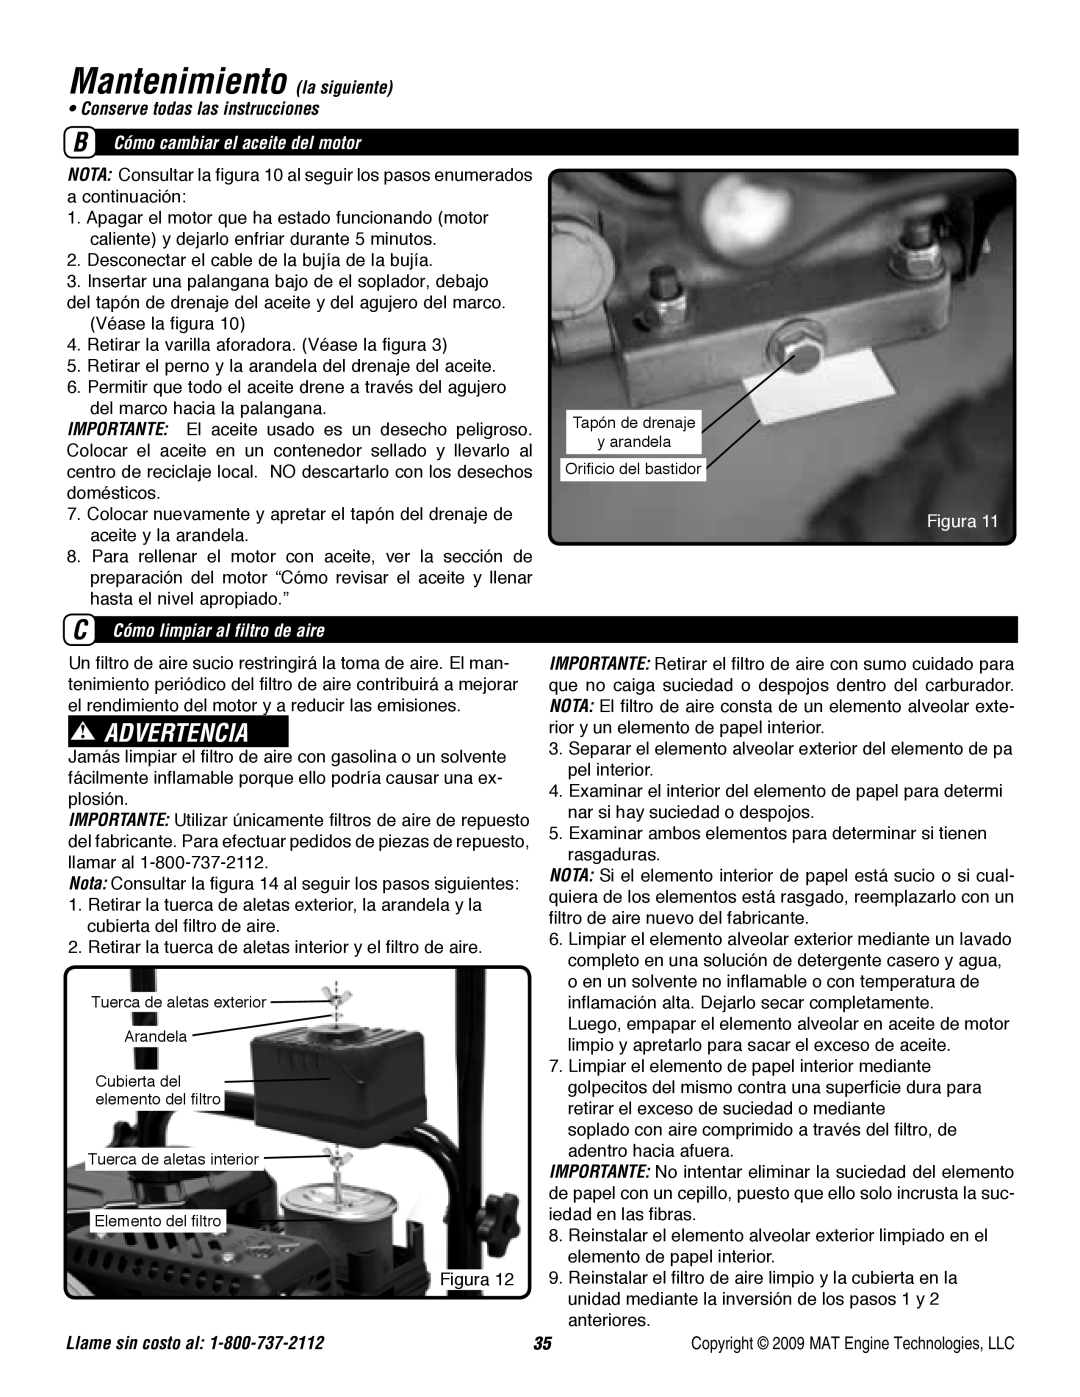 Powermate P-WB-163150-[E] Mantenimiento la siguiente, Advertencia, • Conserve todas las instrucciones, Figura 